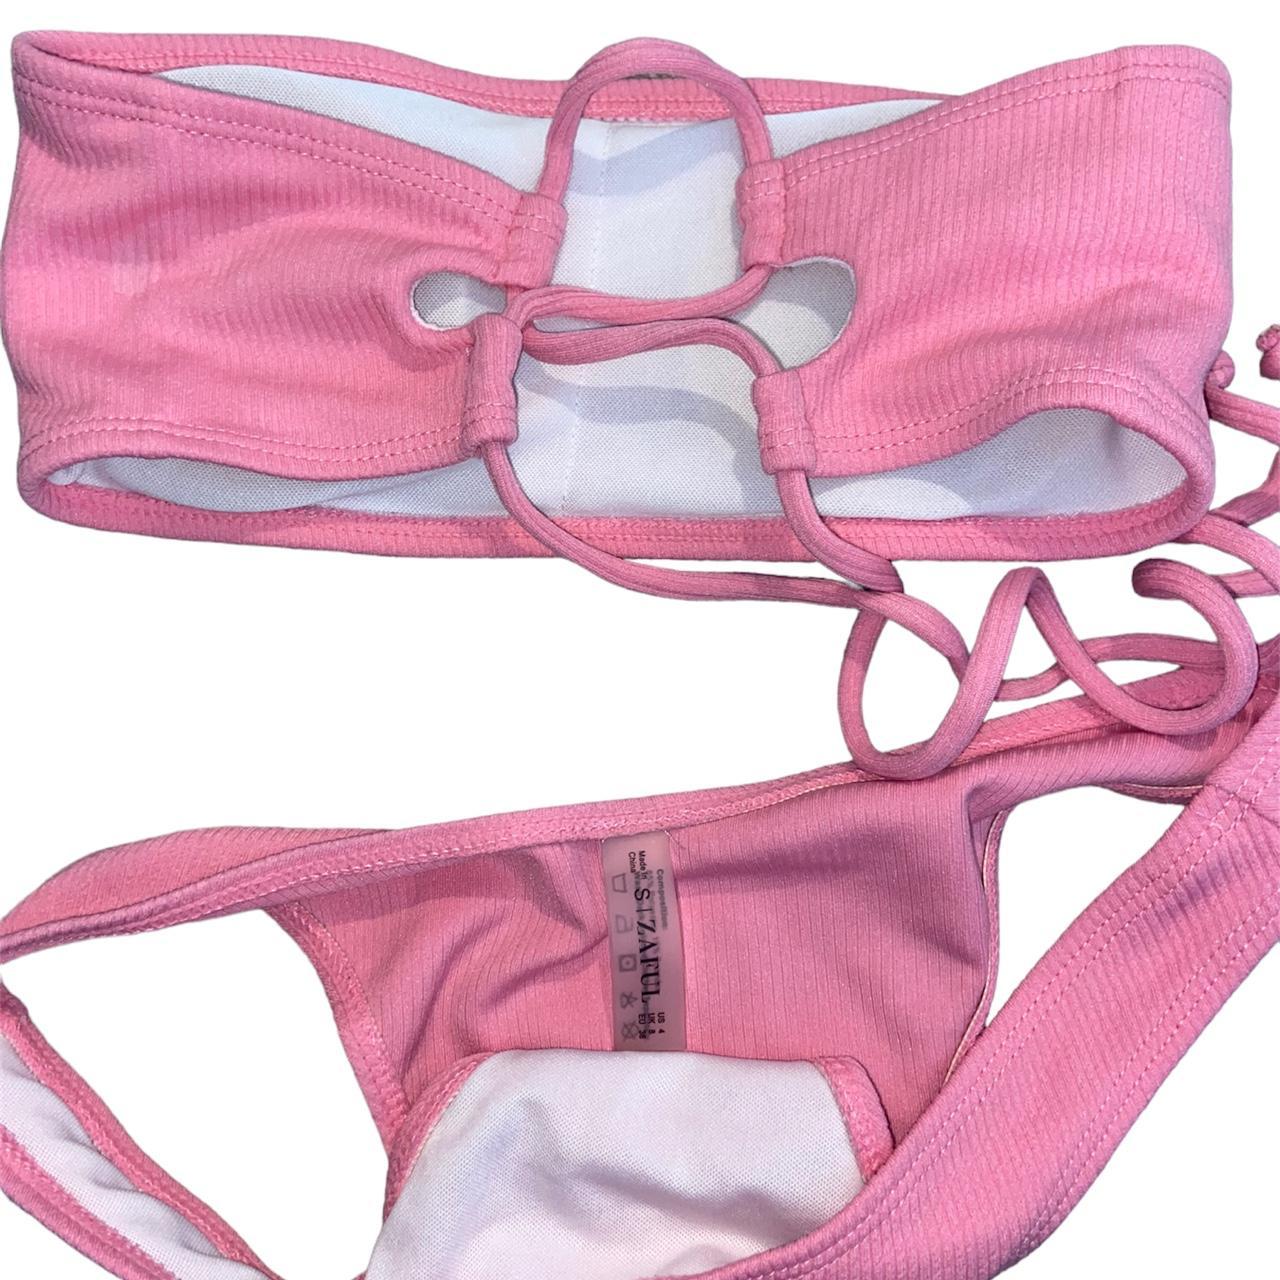 ZAFUL Women's Pink Bikinis-and-tankini-sets (2)